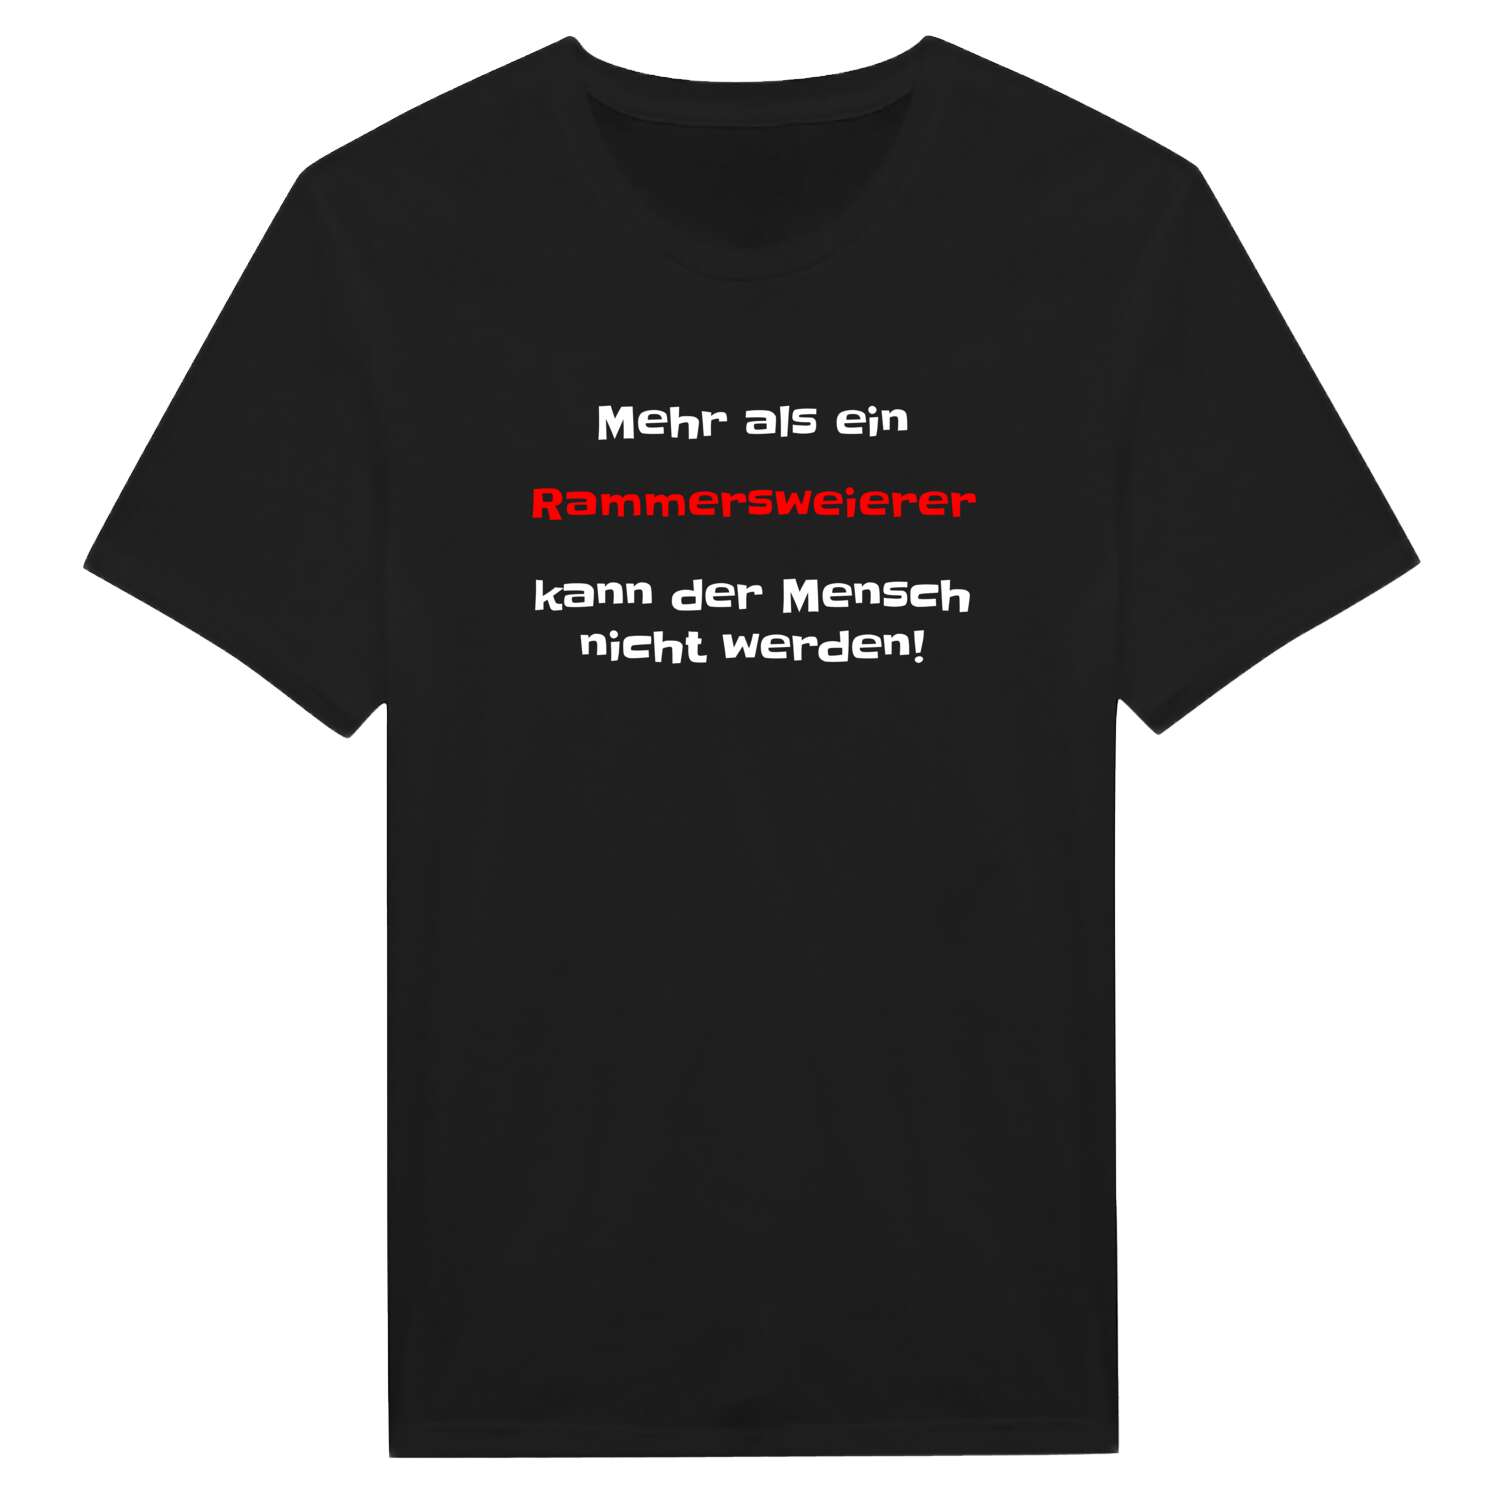 Rammersweier T-Shirt »Mehr als ein«